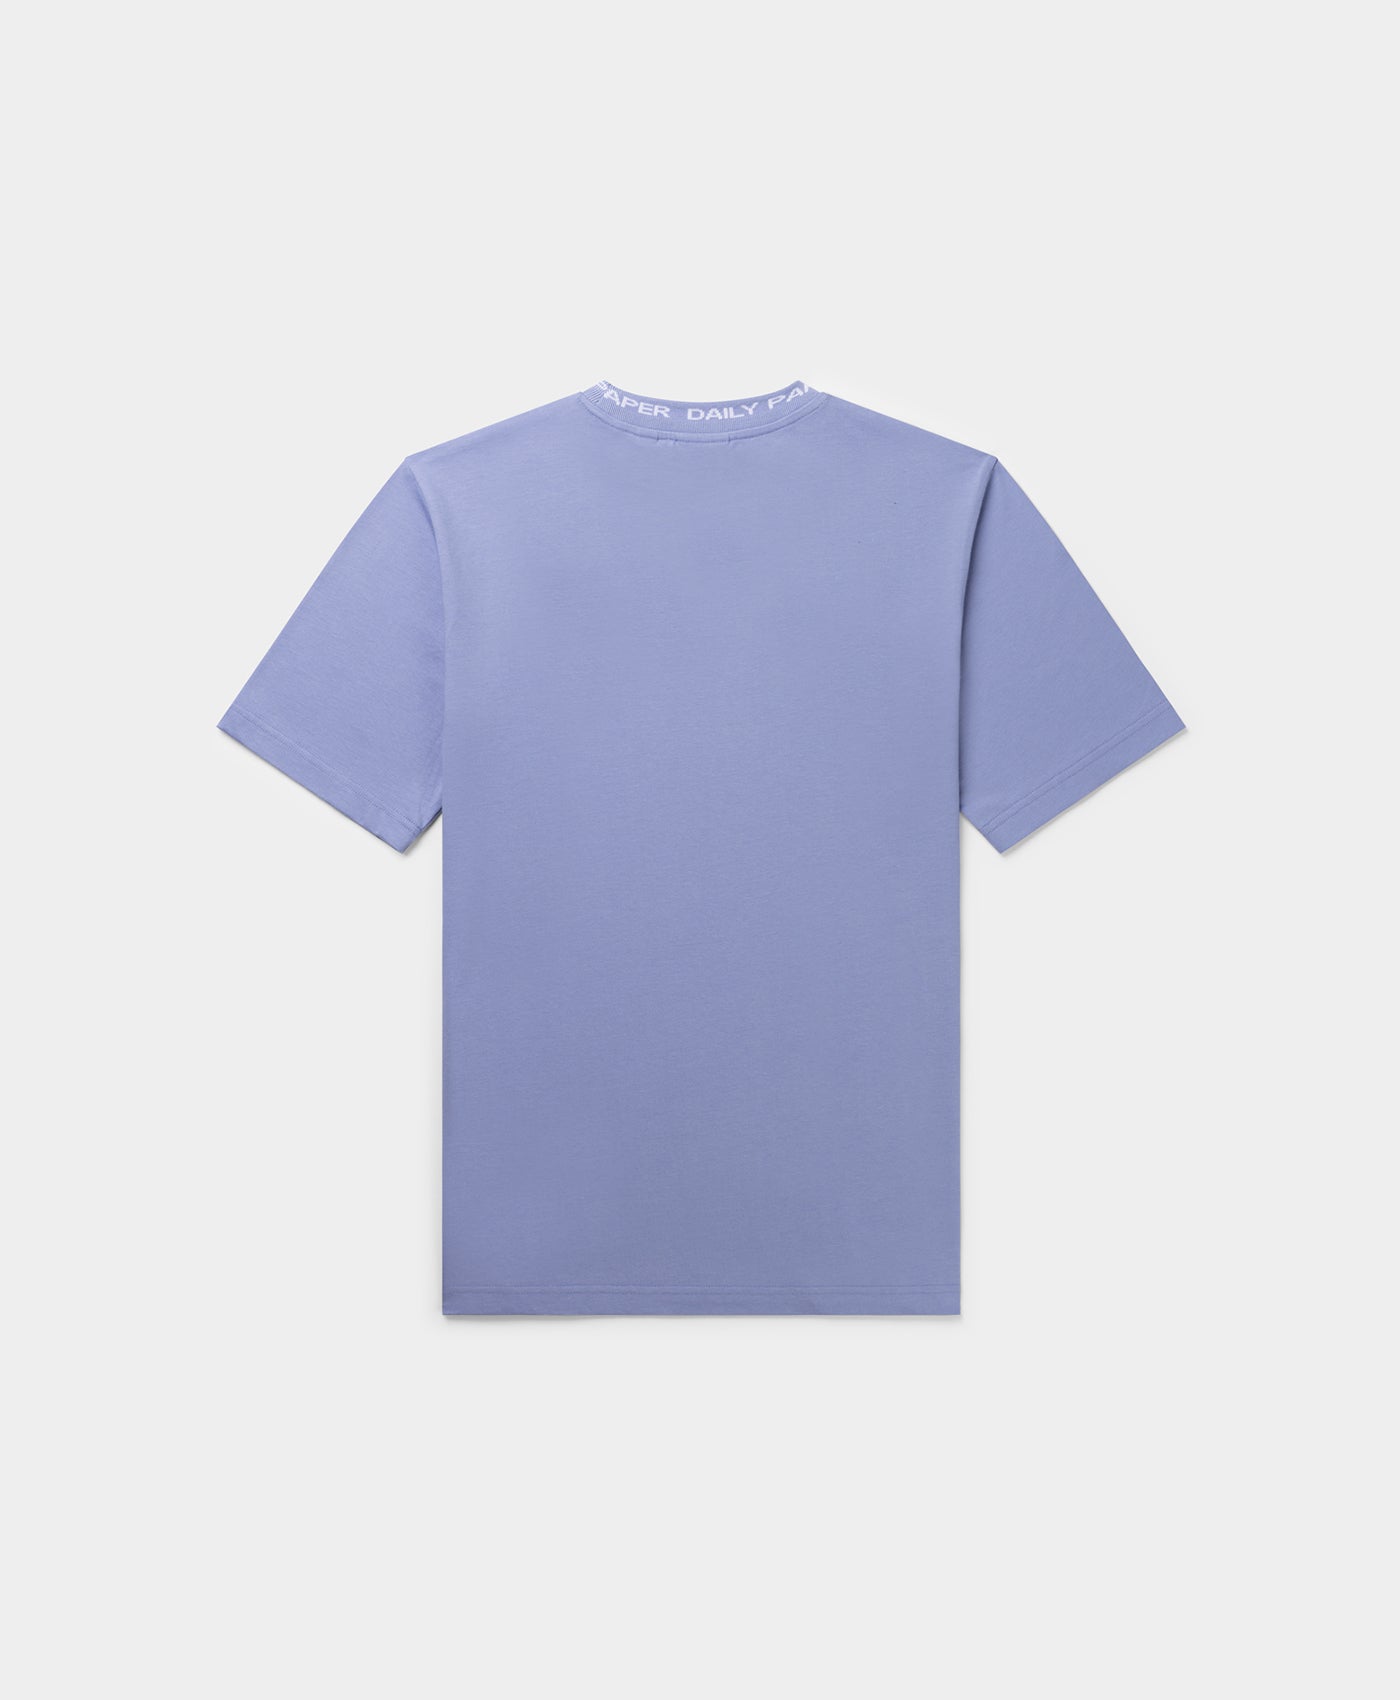 DP - Purple Impression Erib T-Shirt - Packshot - Rear